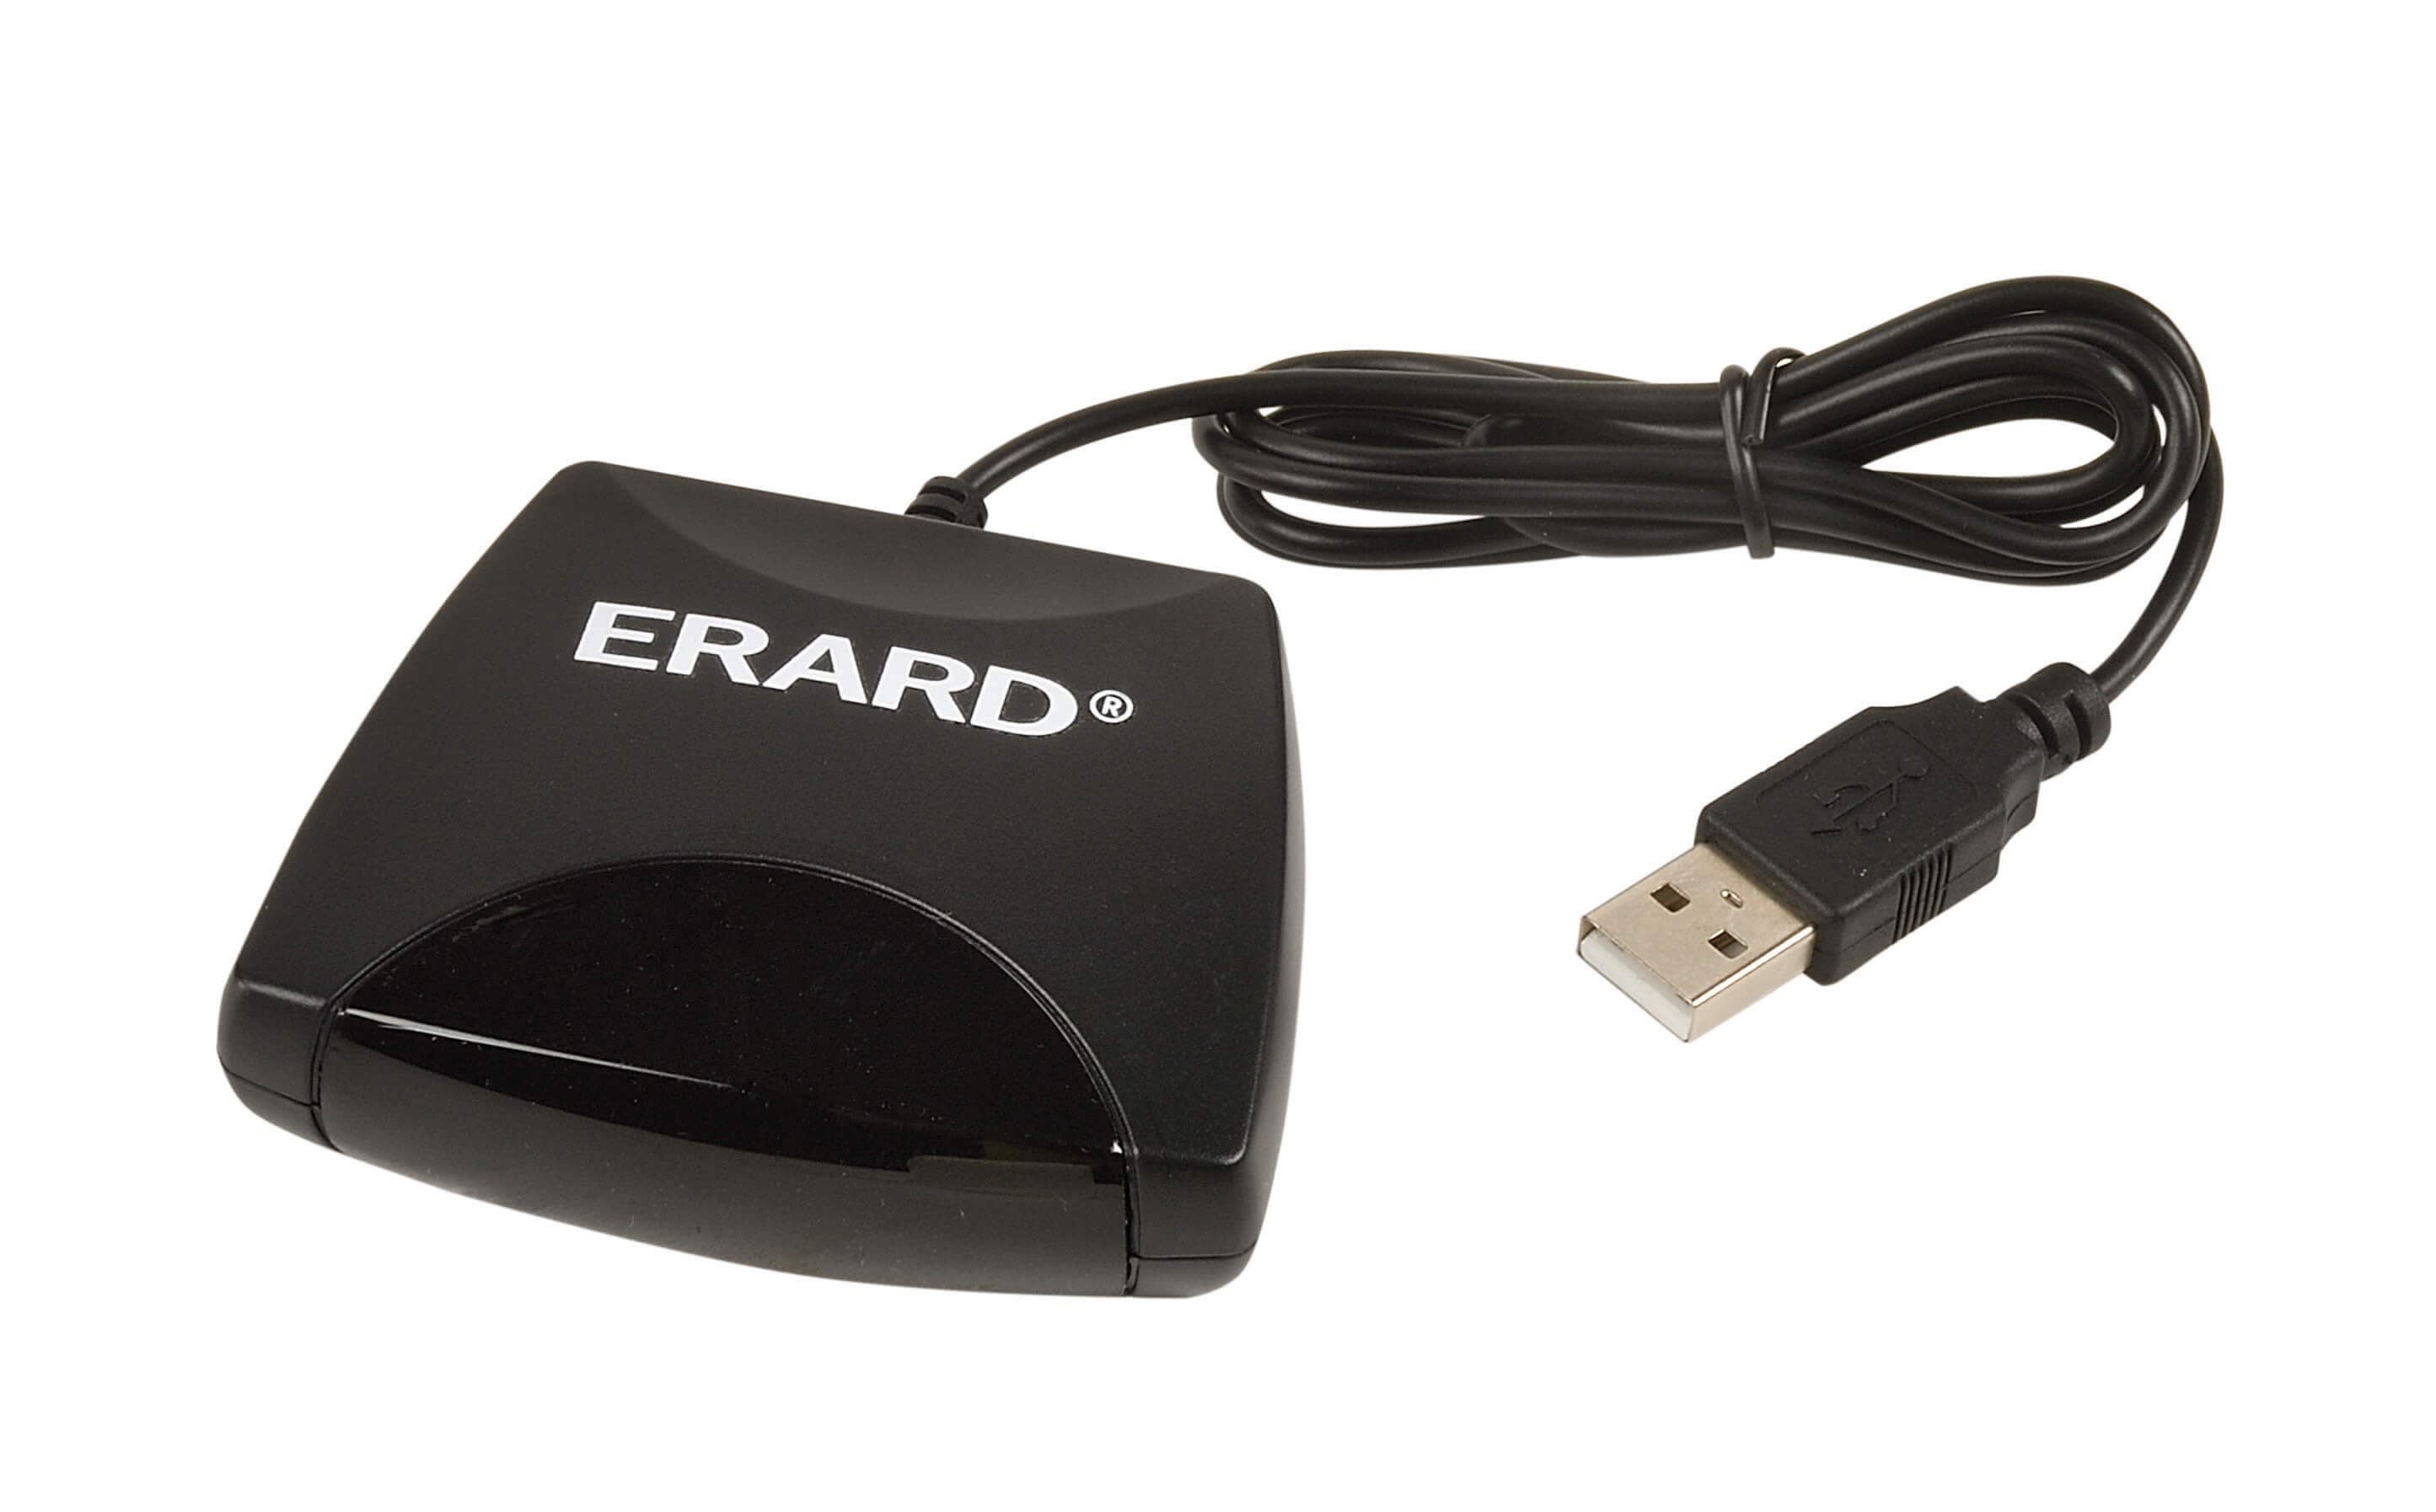 Erard - Dongle USB de programmation infrarouge pour la télécommande ERARD® Réf. 726423